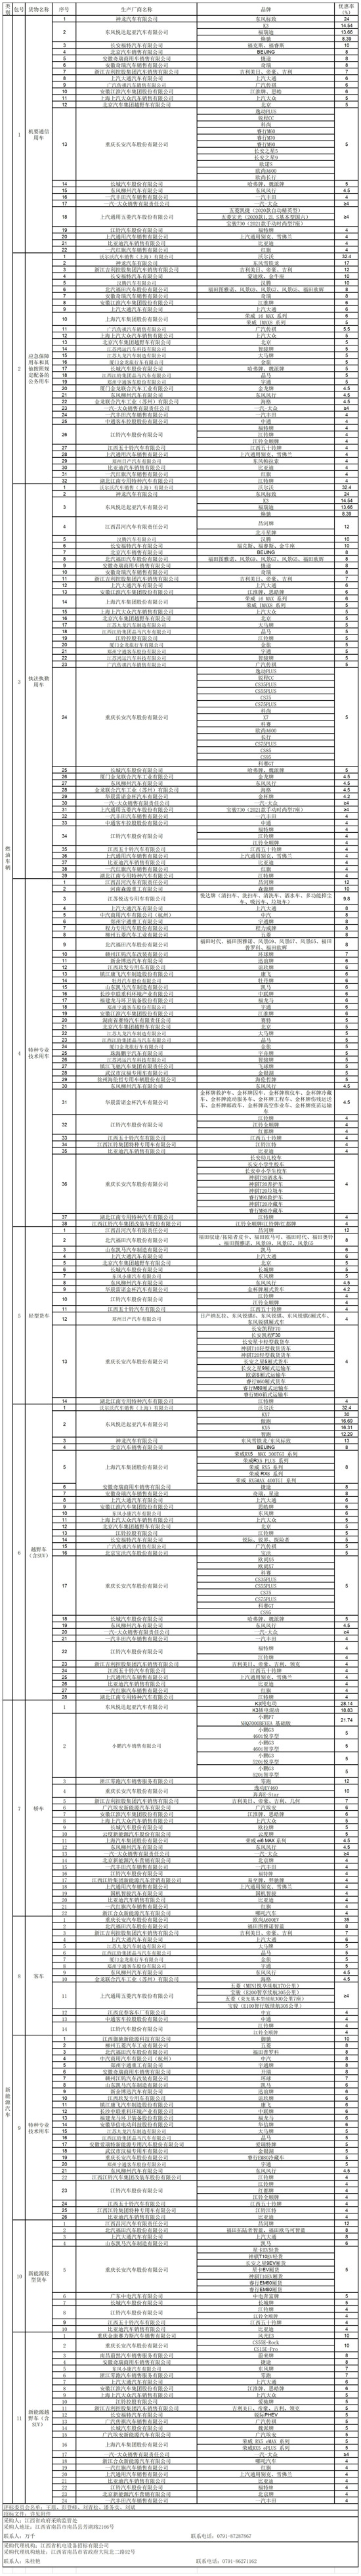 江西协议供货中标企业-550.jpg